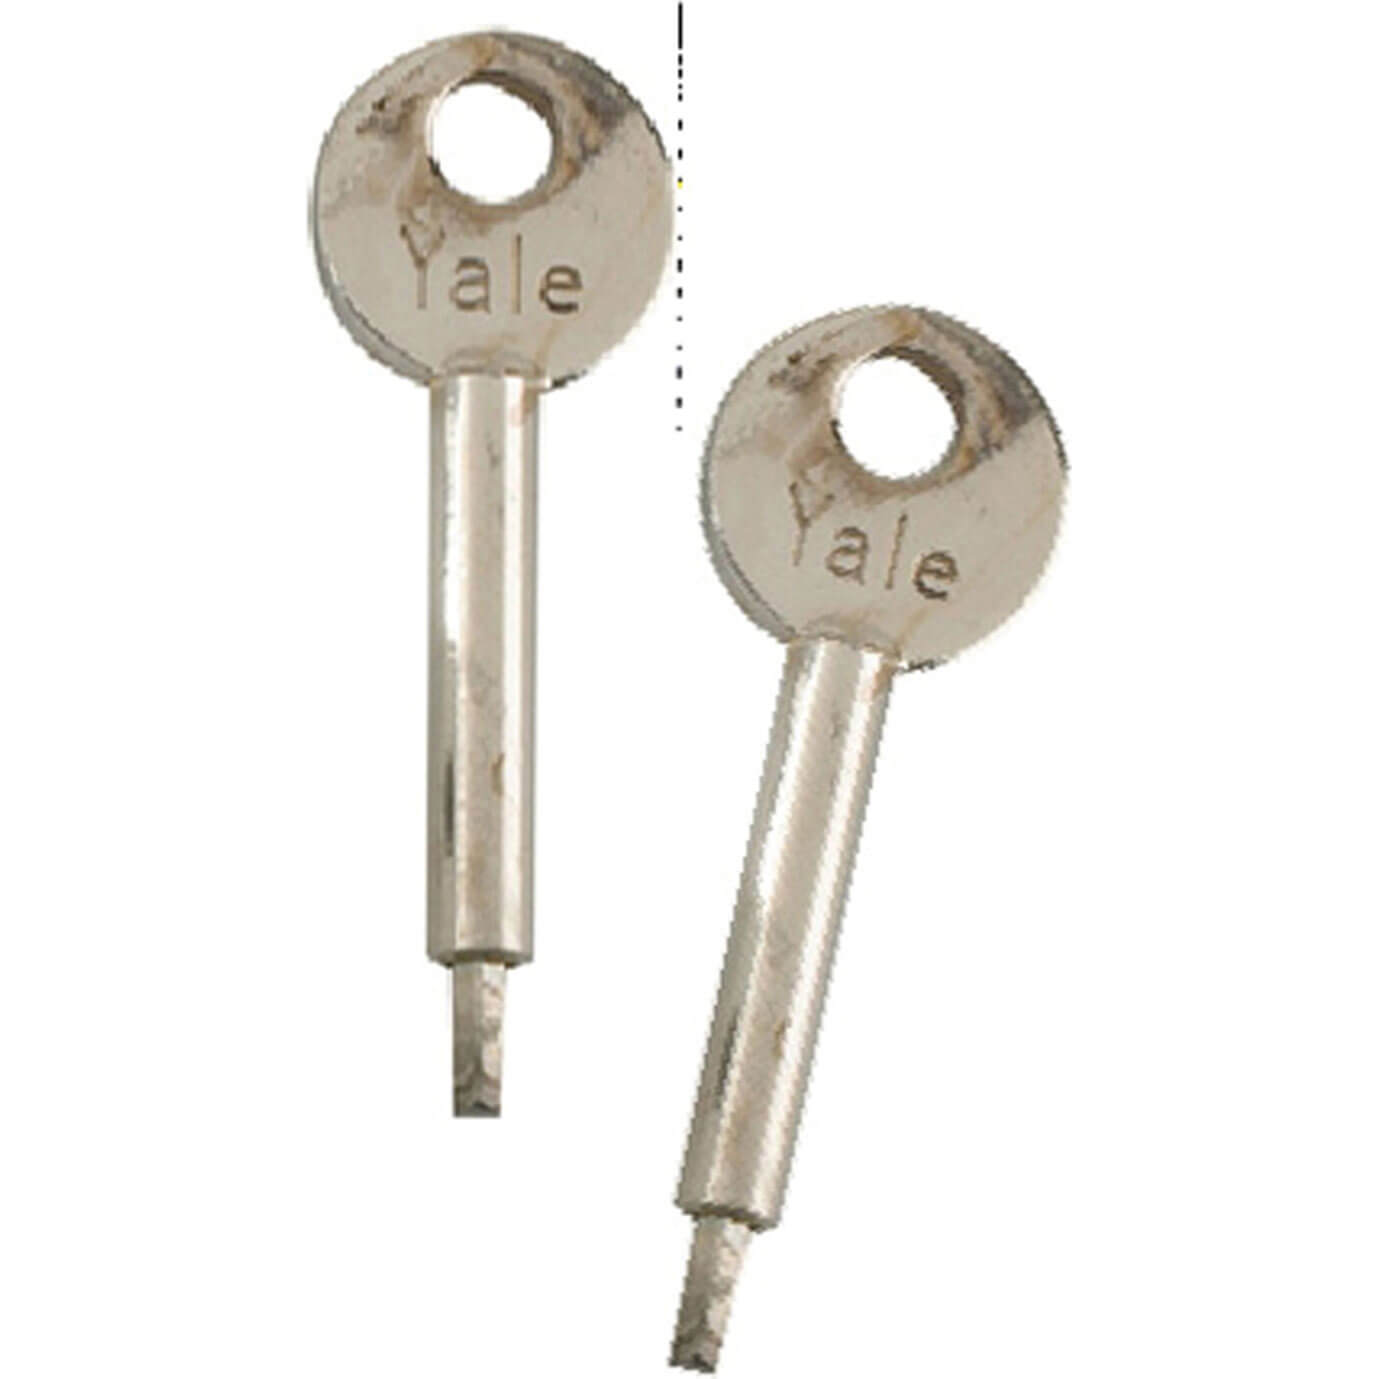 Yale Locks Two Keys For Window Lock 8K109